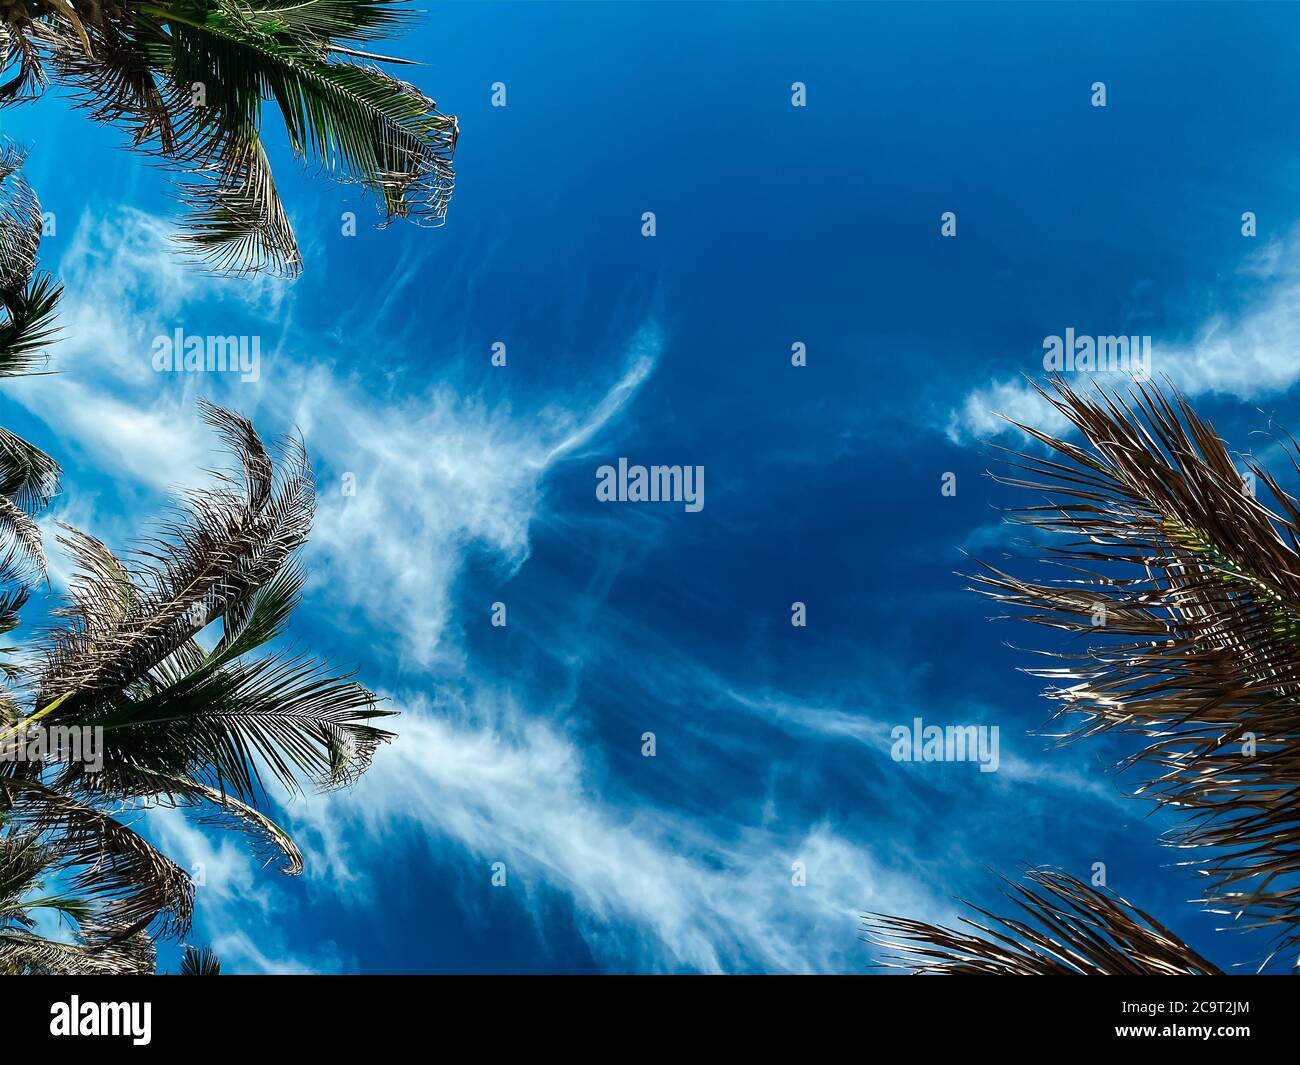 Scena tropicale. Concetto estivo, foglie di palme da cocco contro un cielo blu con belle nuvole bianche. Posiziona per inserire testo o logo. Spazio di copia Foto Stock